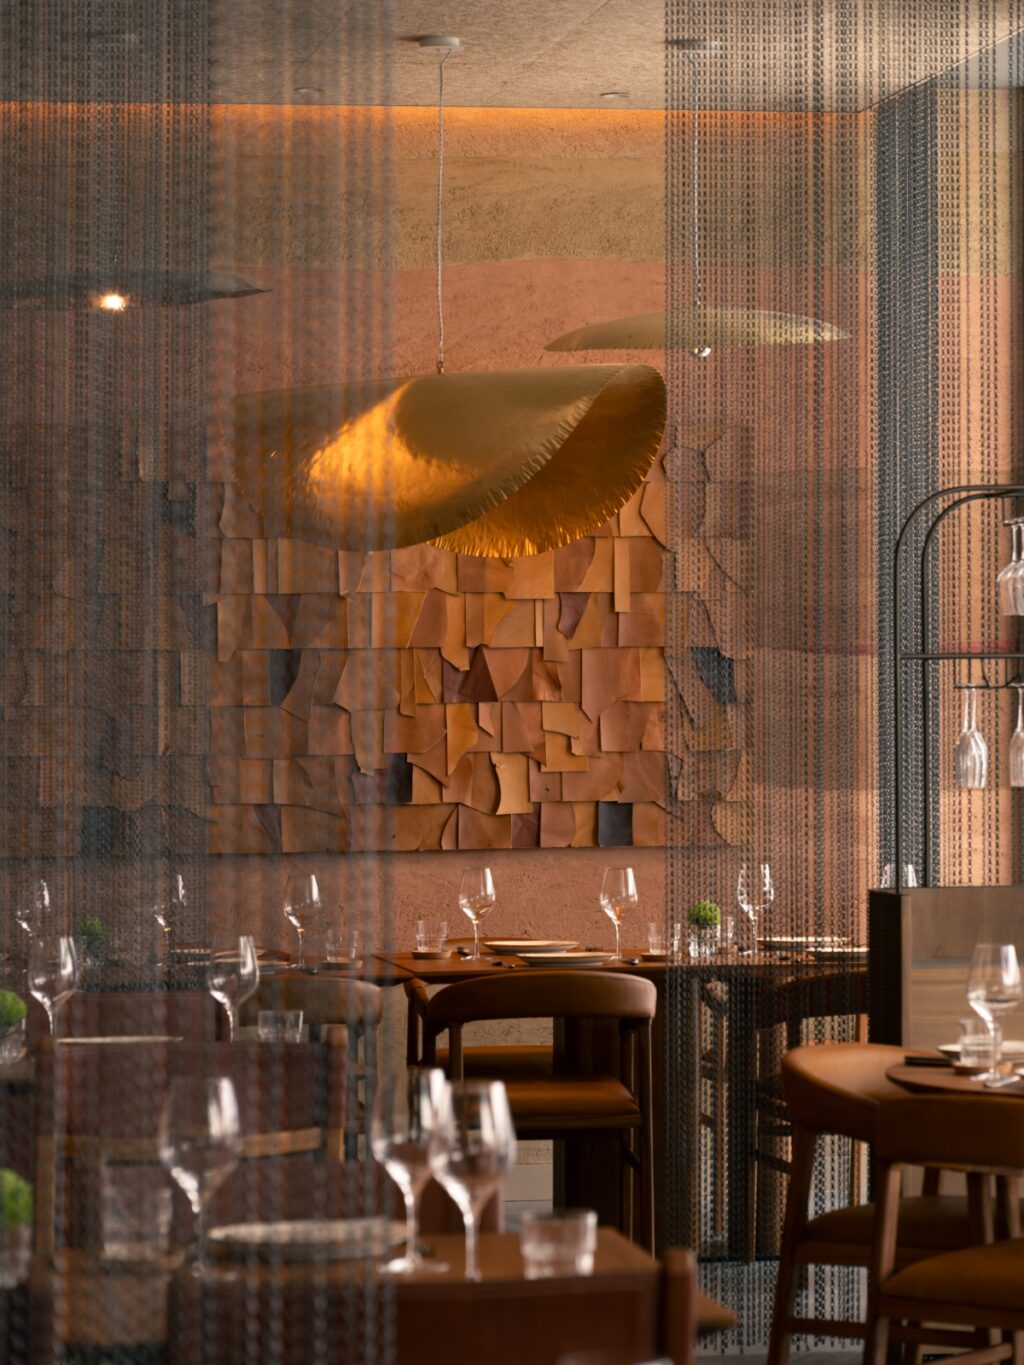 Ein neues holzbefeuertes Grillrestaurant Fireplace by Bedrock in Singapur. Heiße Design-Leute